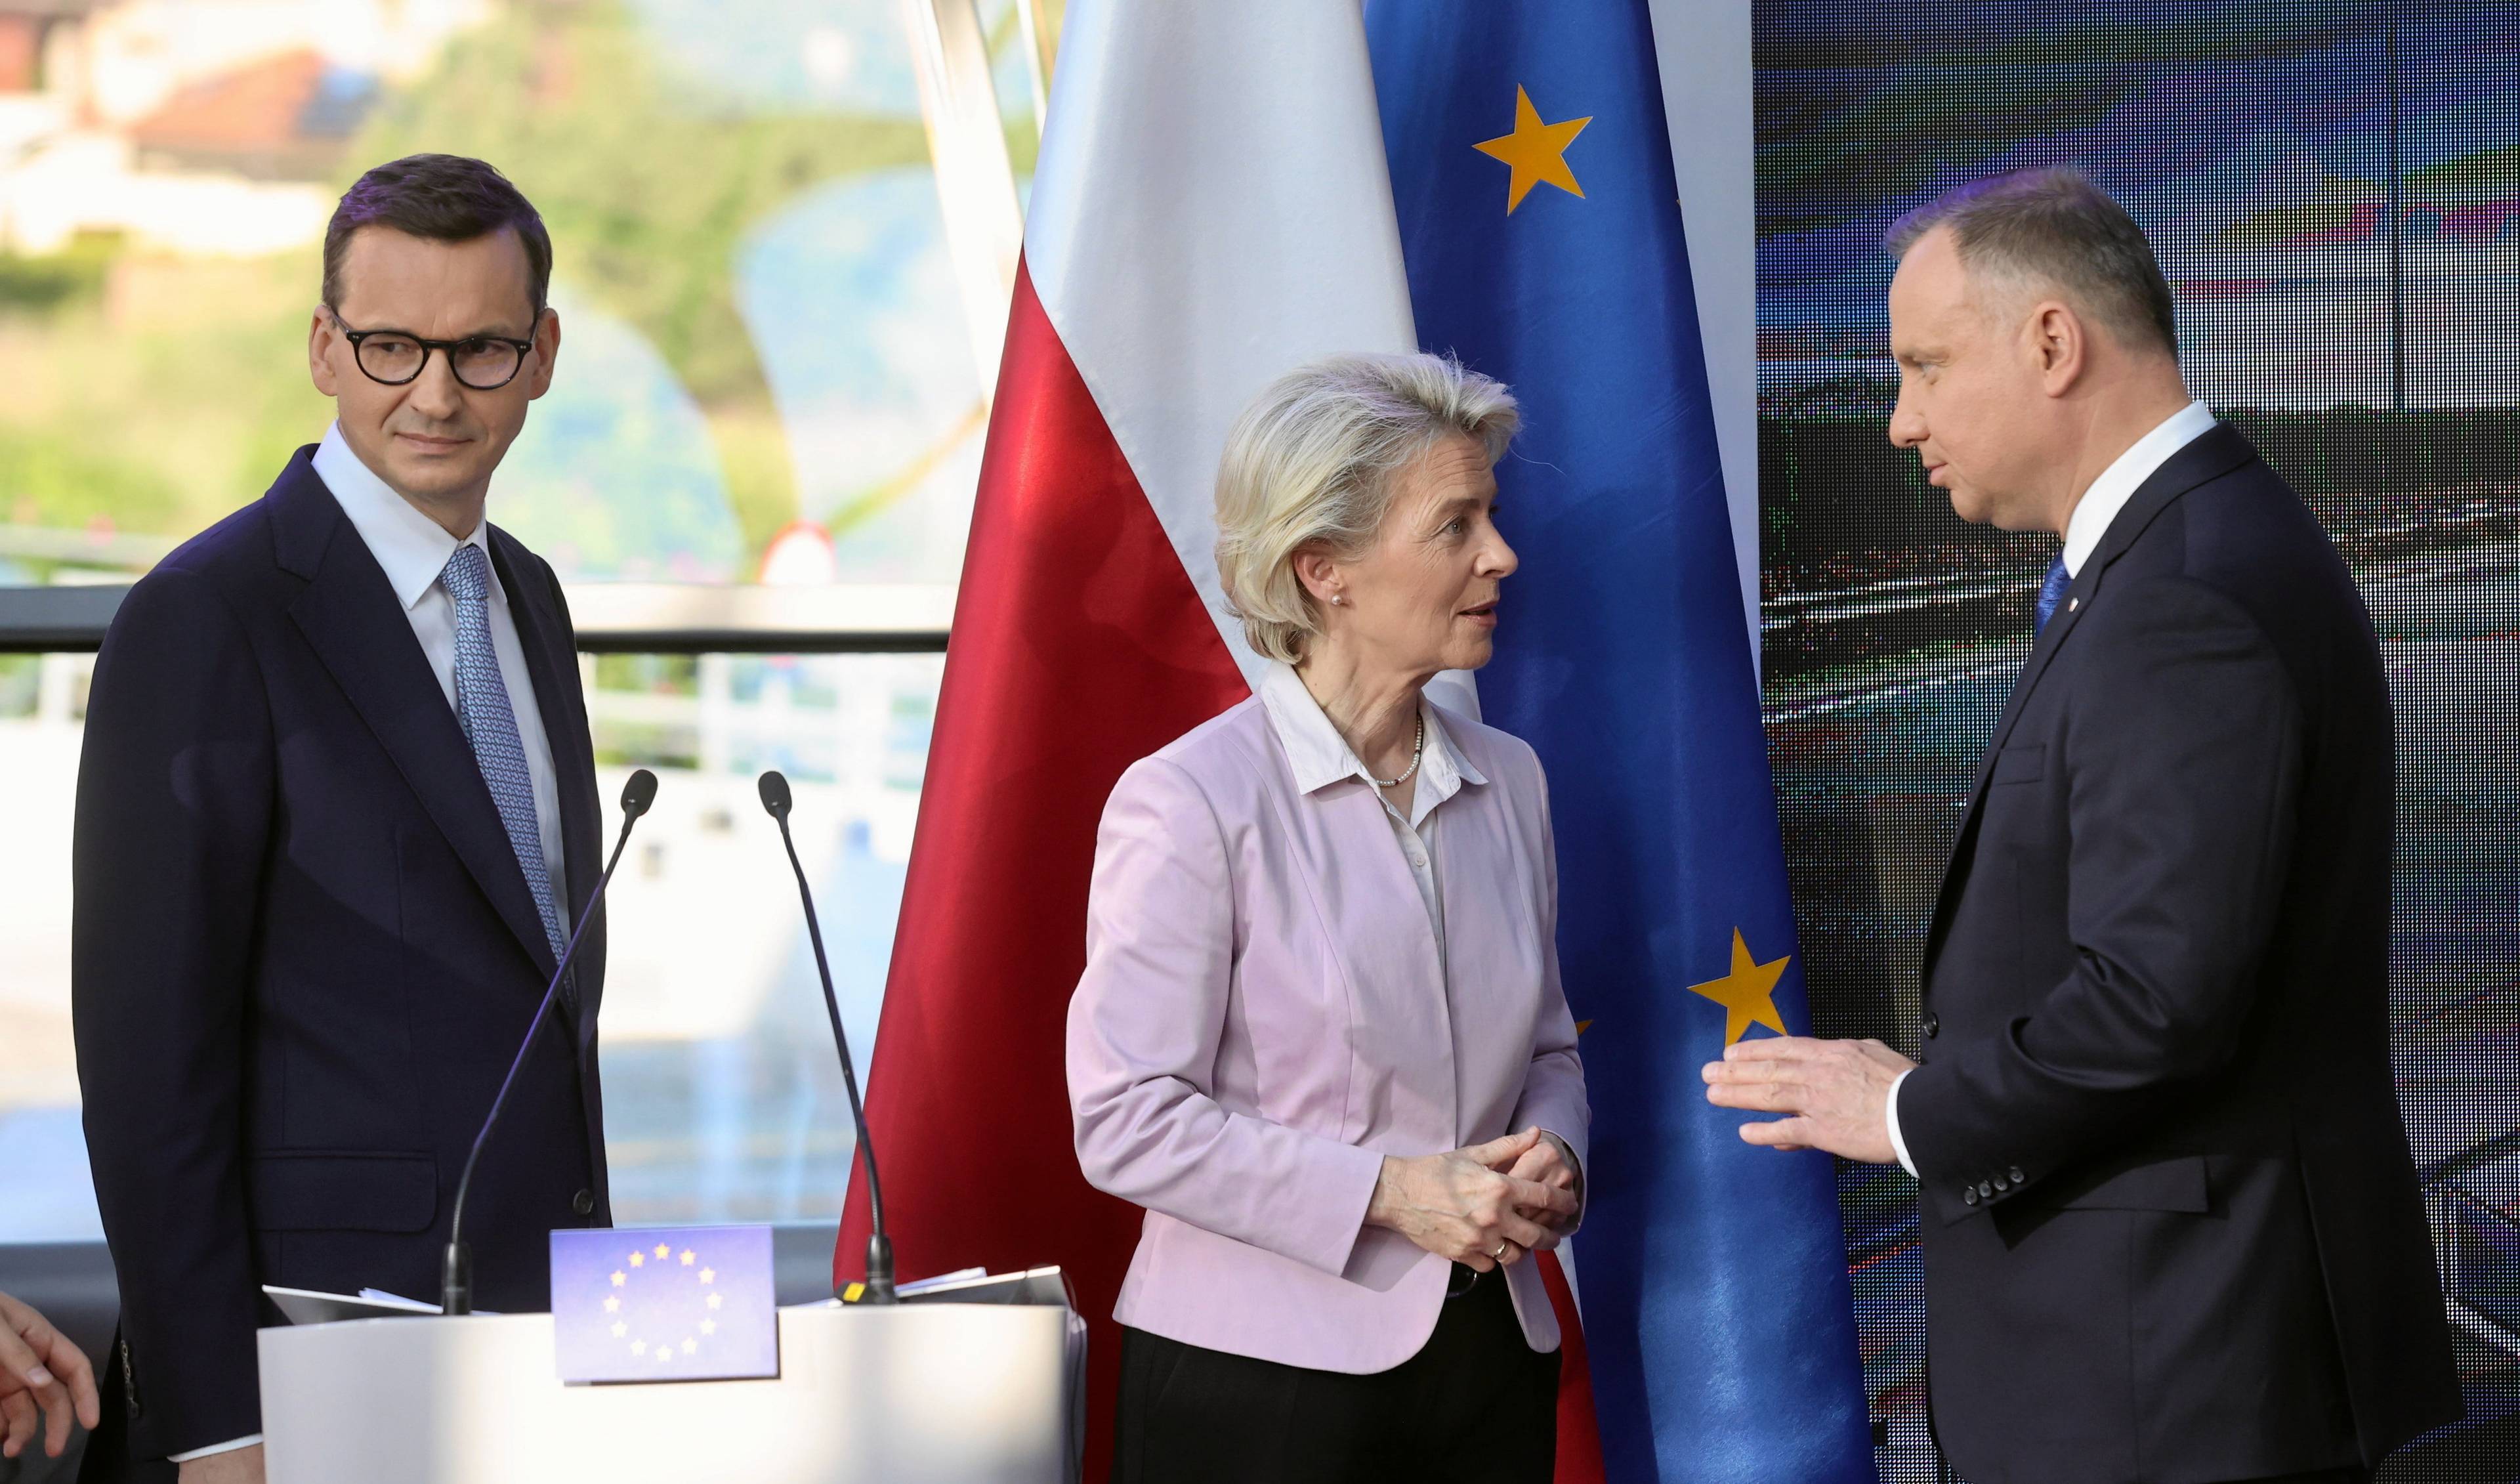 Mateusz Morawiecki, Ursula von Der Leyen i Andrzej Duda rozmawiają przy mównicy. Kobieta stoi w środku, za nimi flagi Unii Europejskiej i Polski